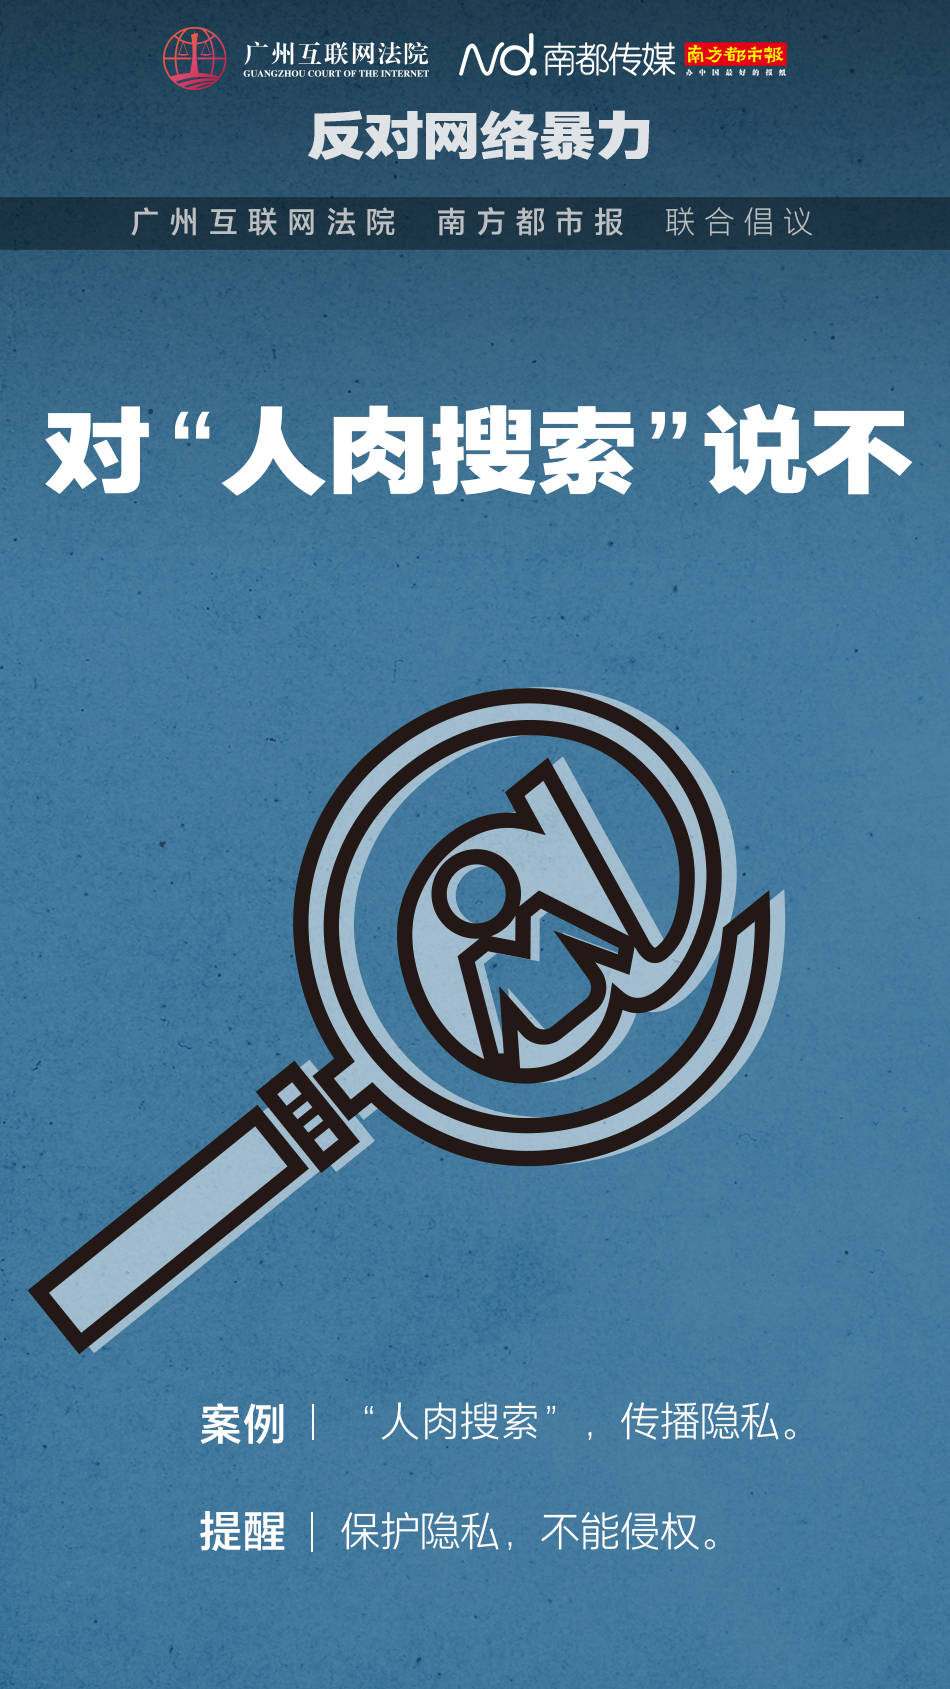 反对网络暴力,别做键盘侠!广州互联网法院发出六大倡议